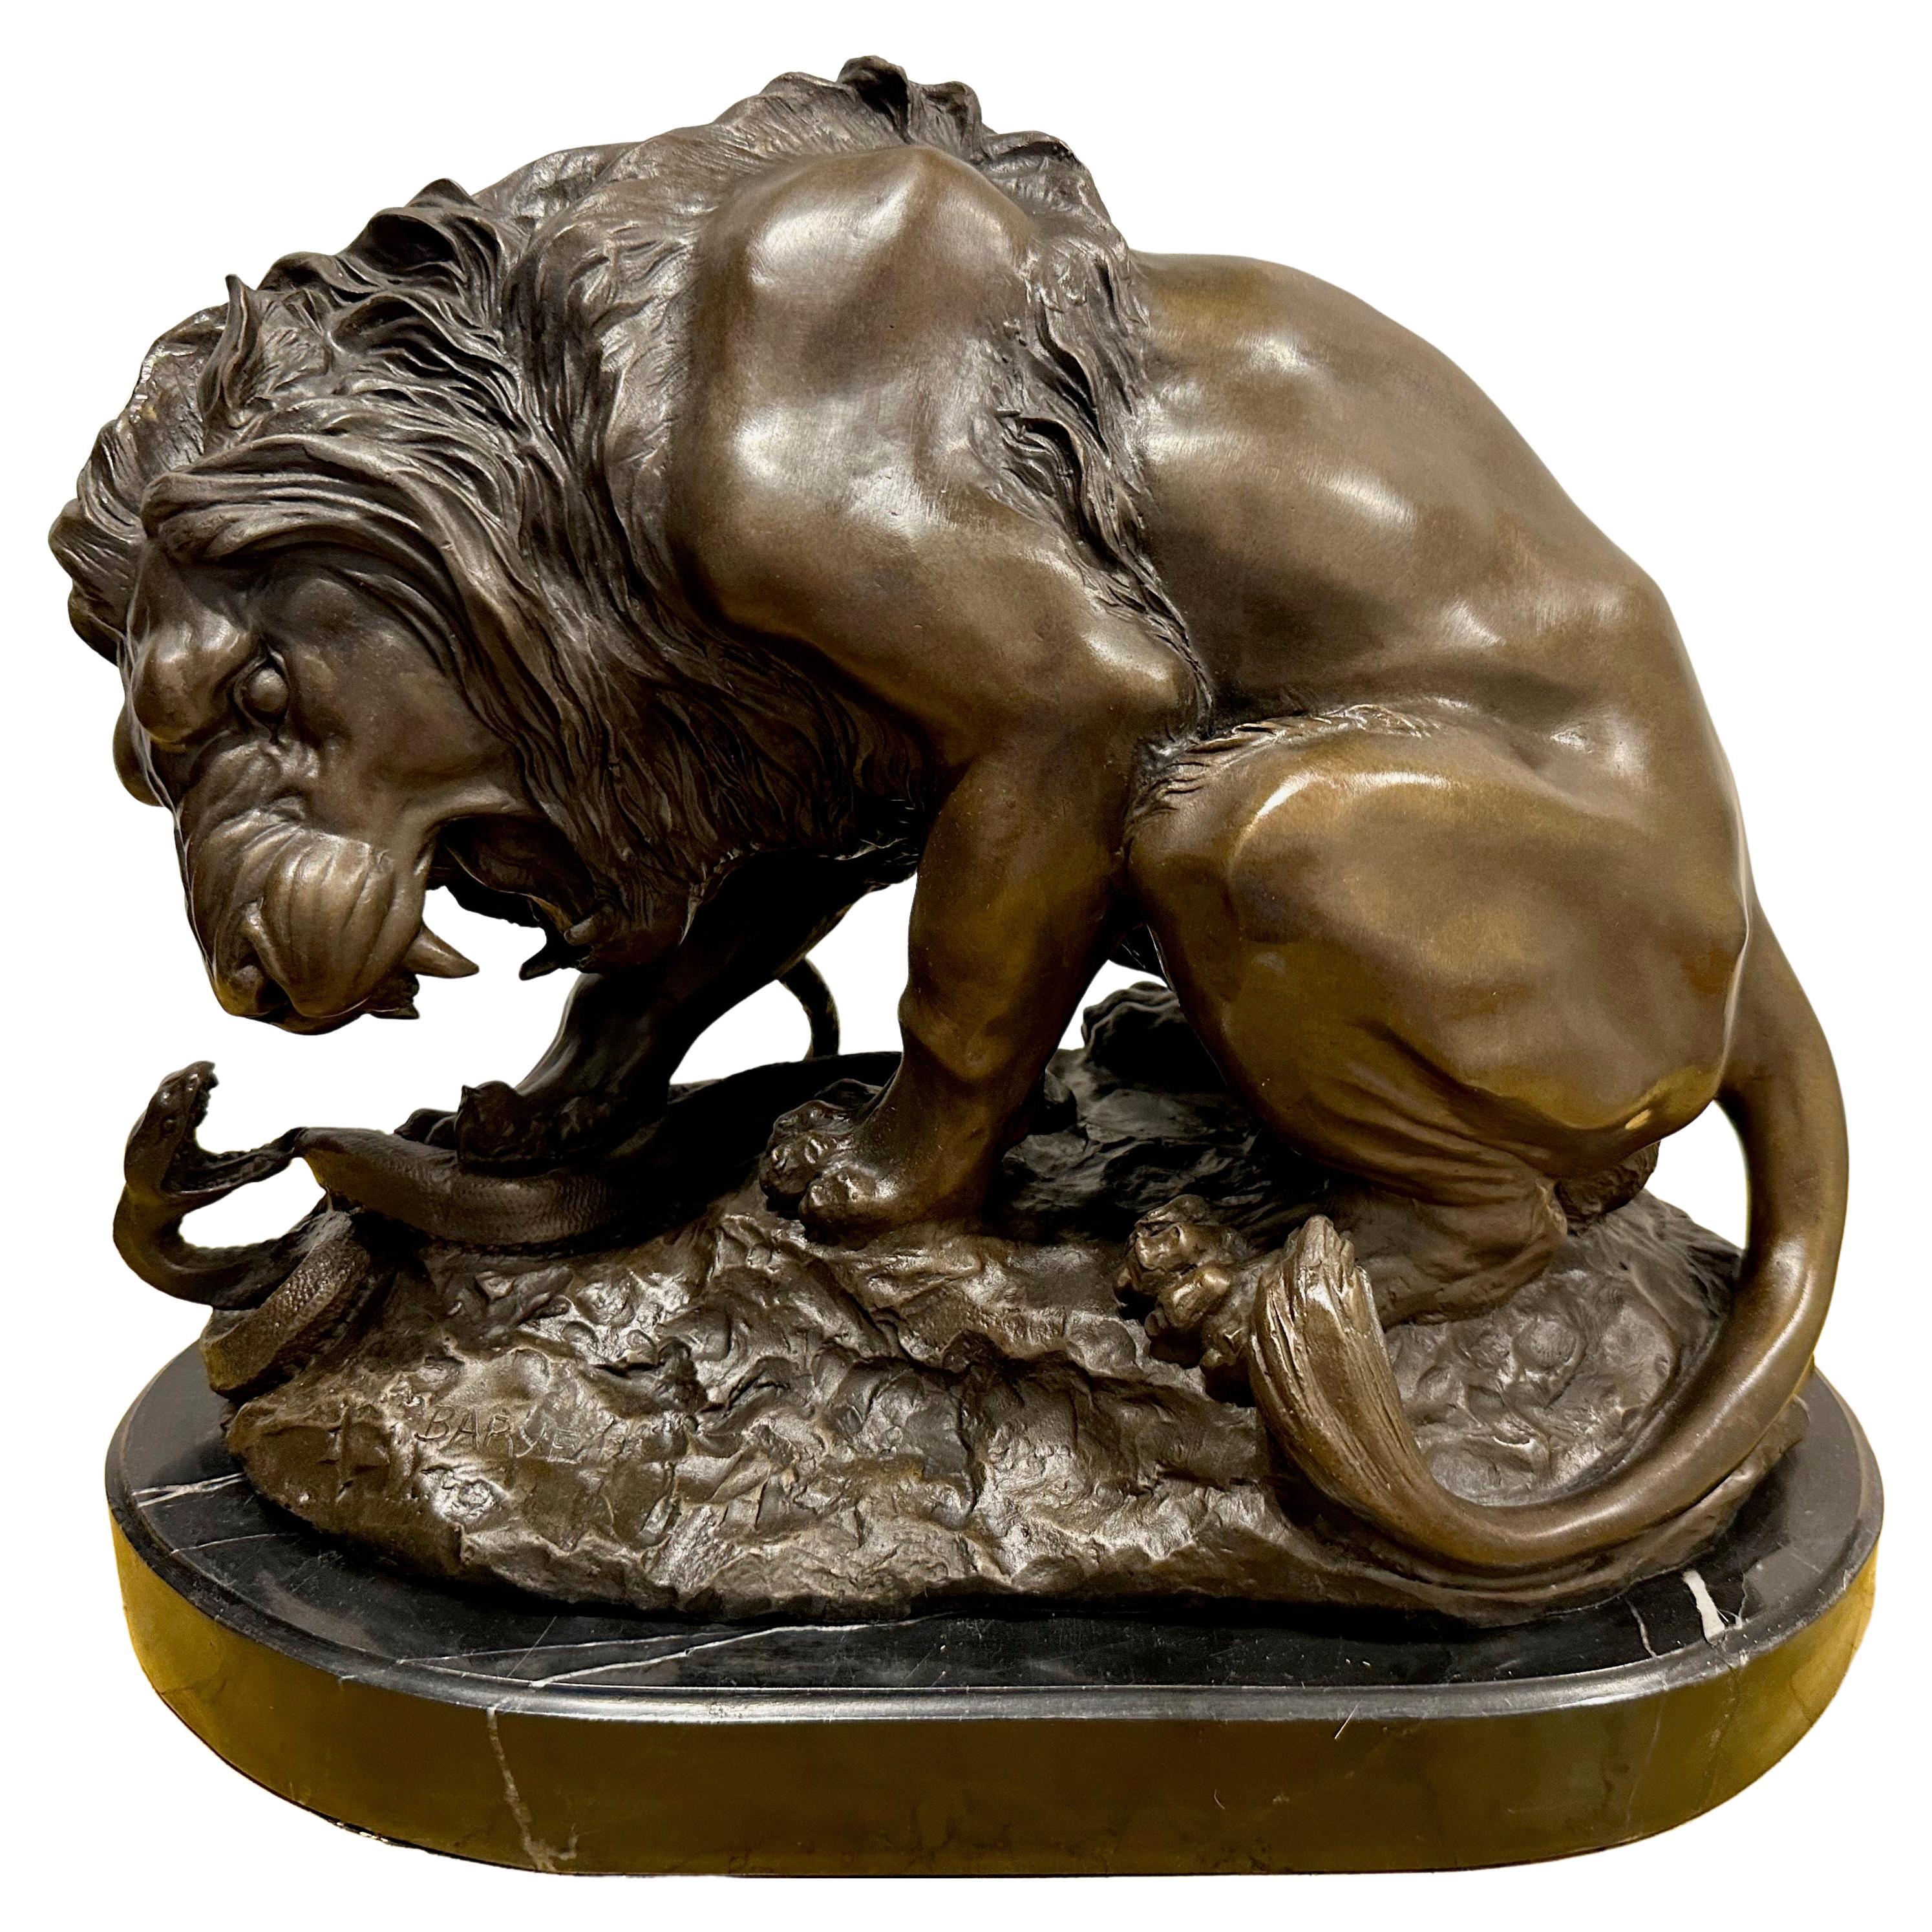 Bronze signé Antoine-Louis Barye (1795-1875) représentant un lion arrachant un serpent, vers 1870